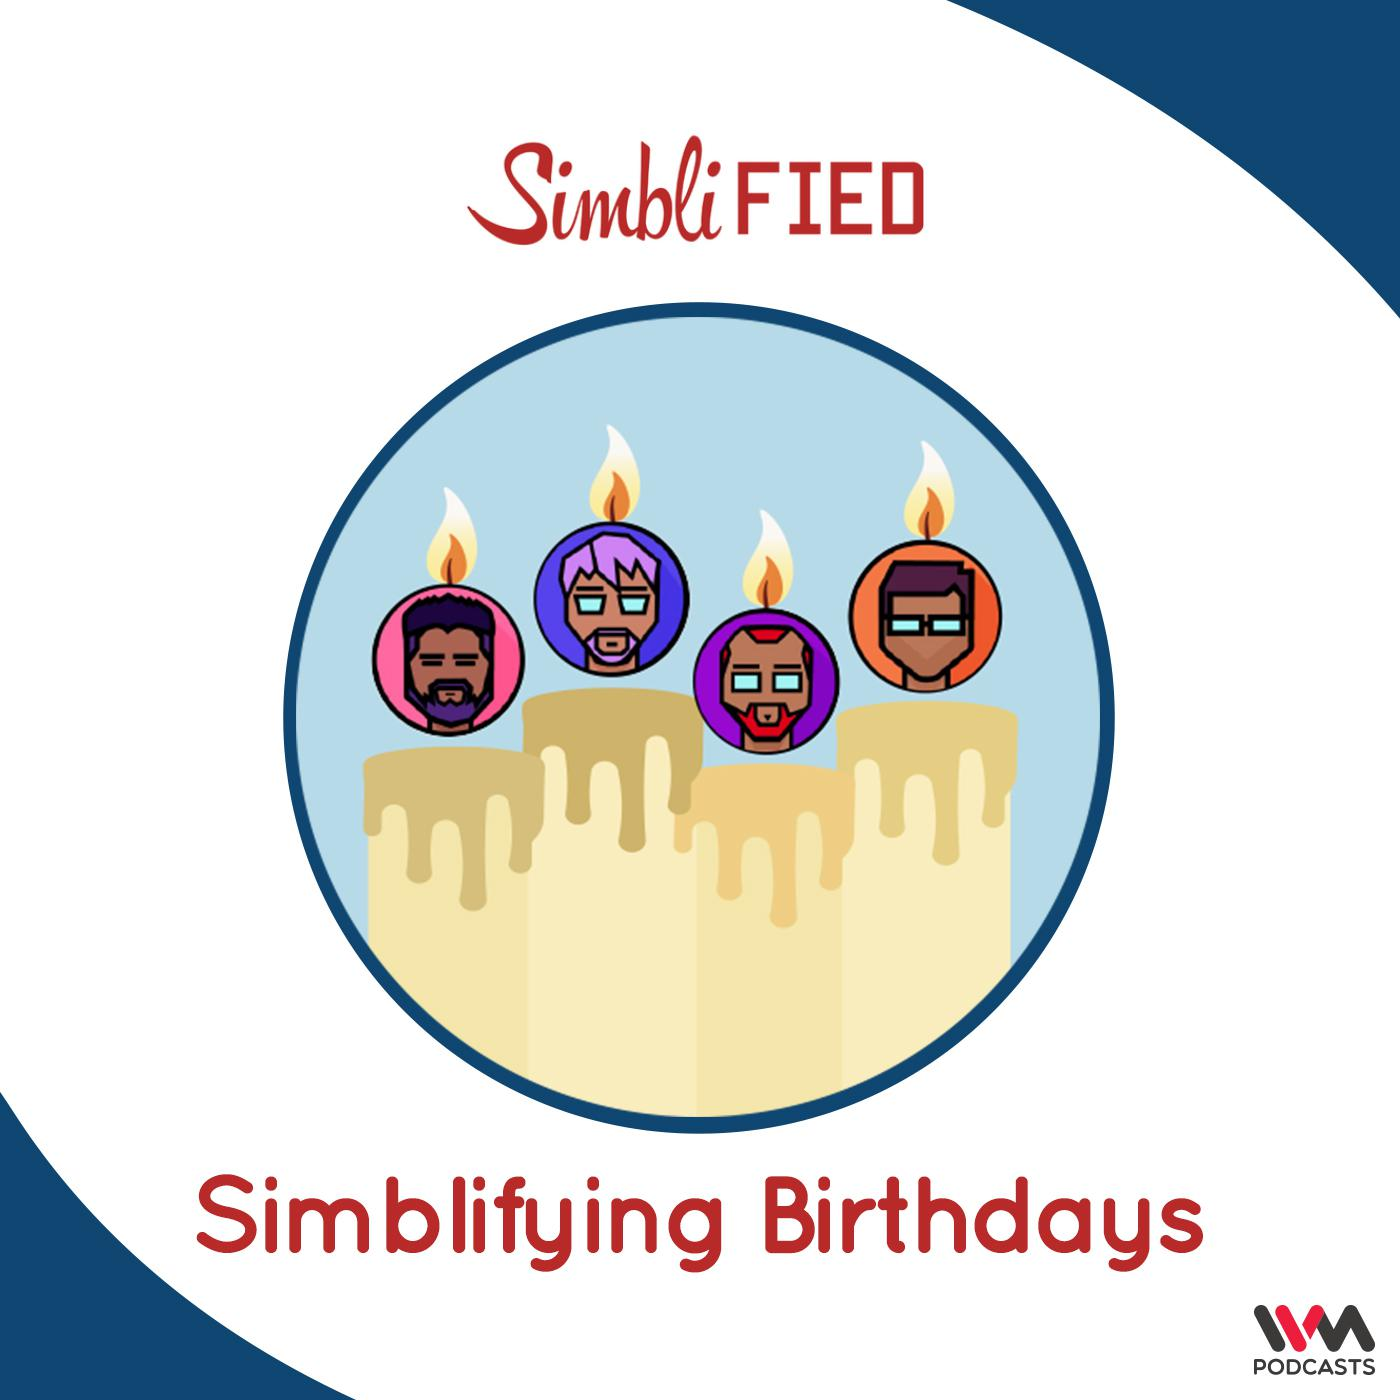 Simblifying Birthdays